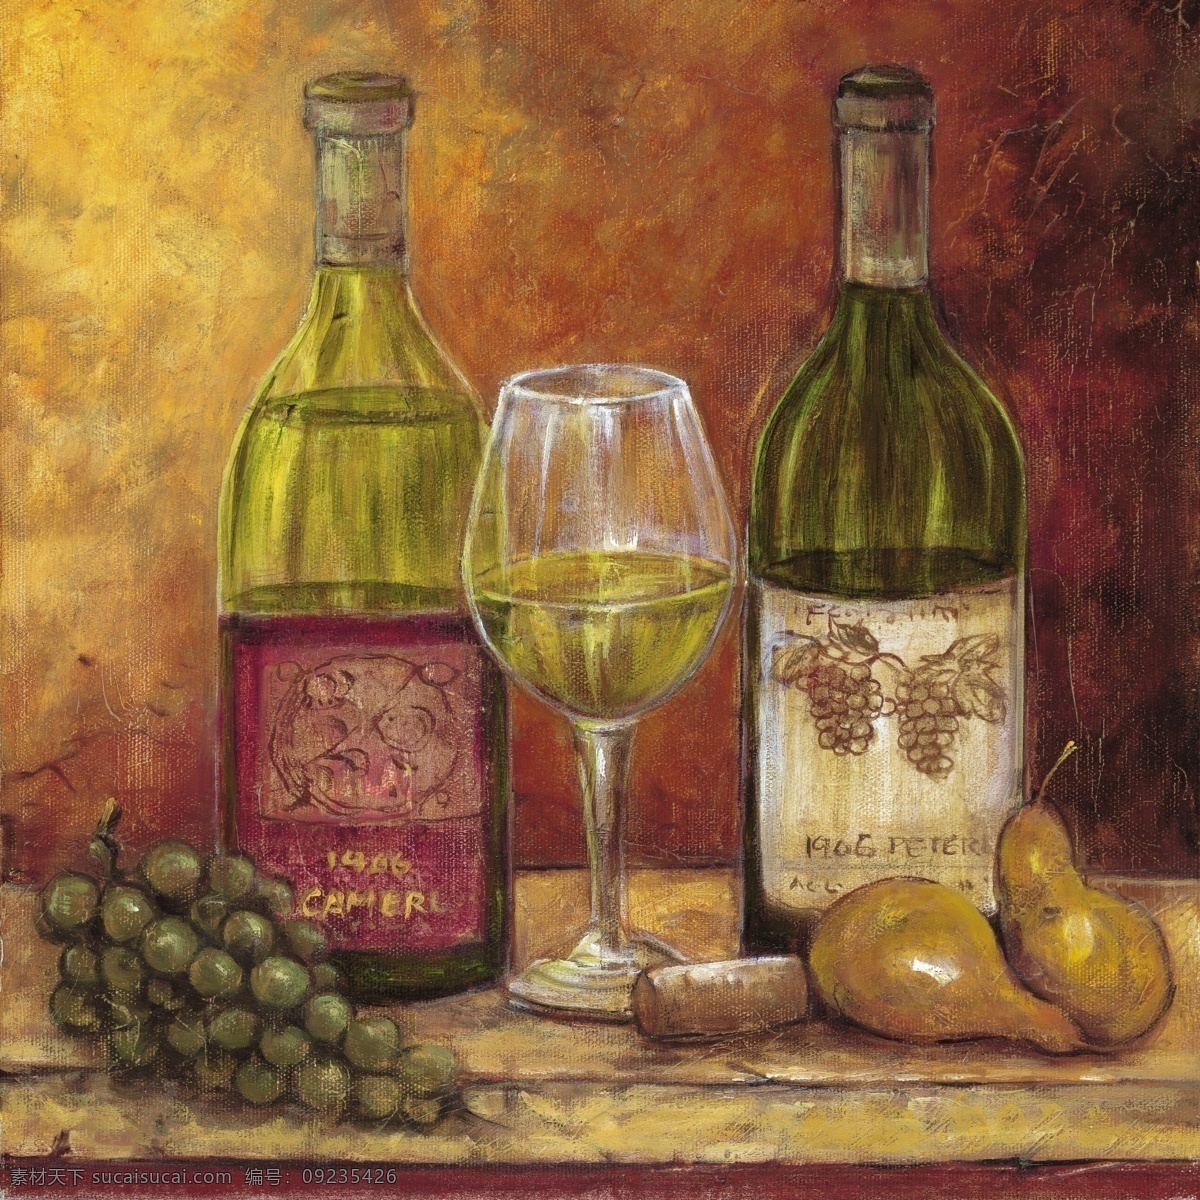 红酒 水果 高脚杯 酒瓶 葡萄 雪梨 油画作品 西方美术 家居装饰素材